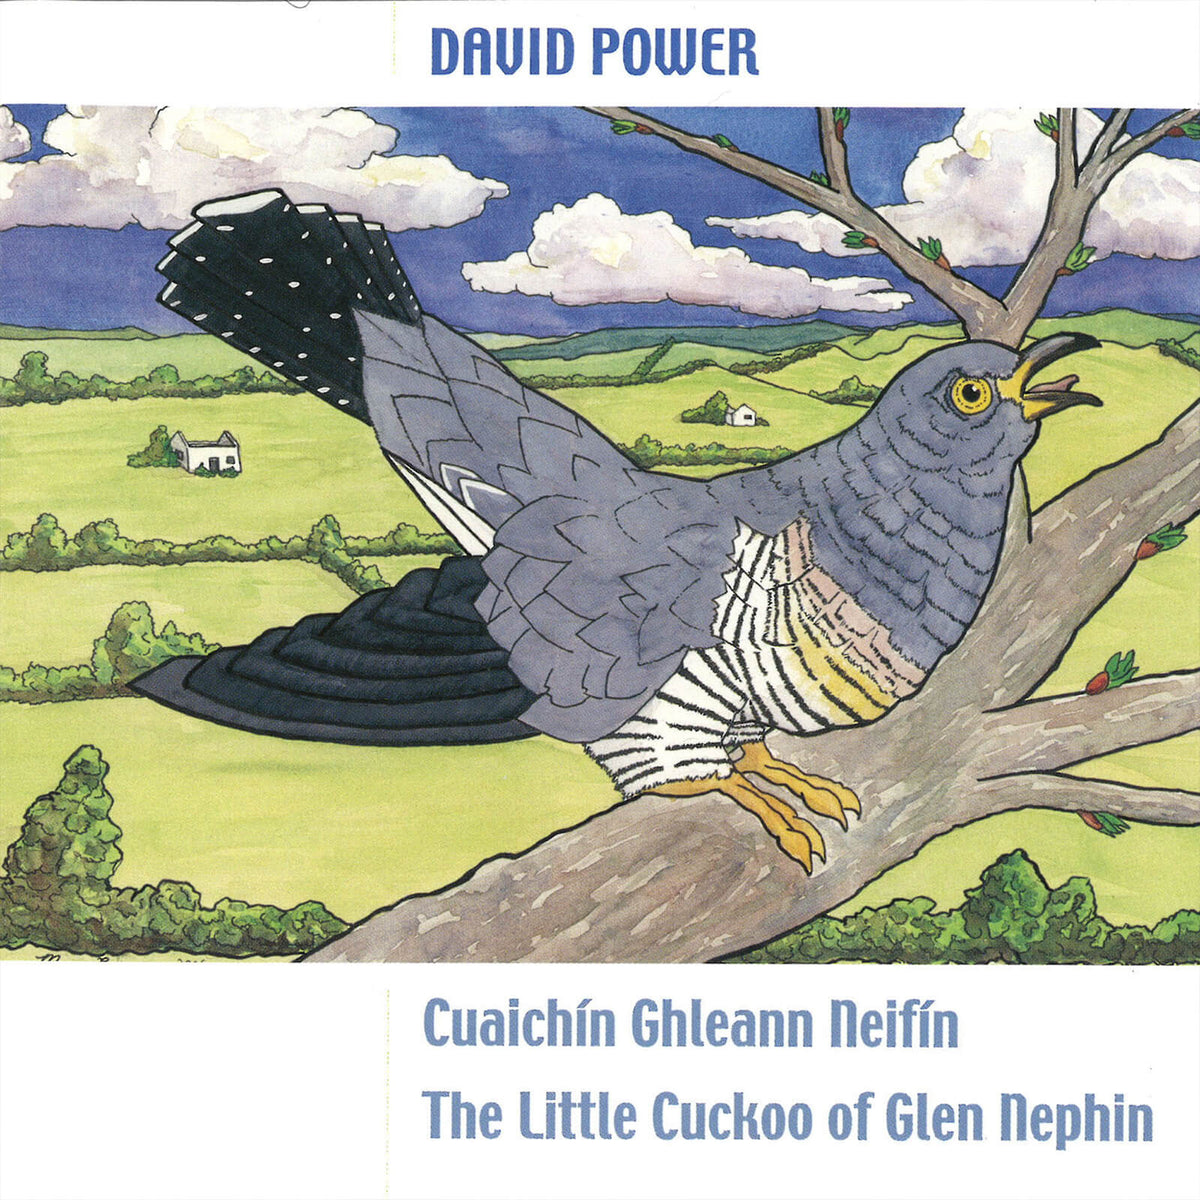 David Power : Cuaichín Ghleann Neifin (The Little Cuckoo Of Glen Nephin)